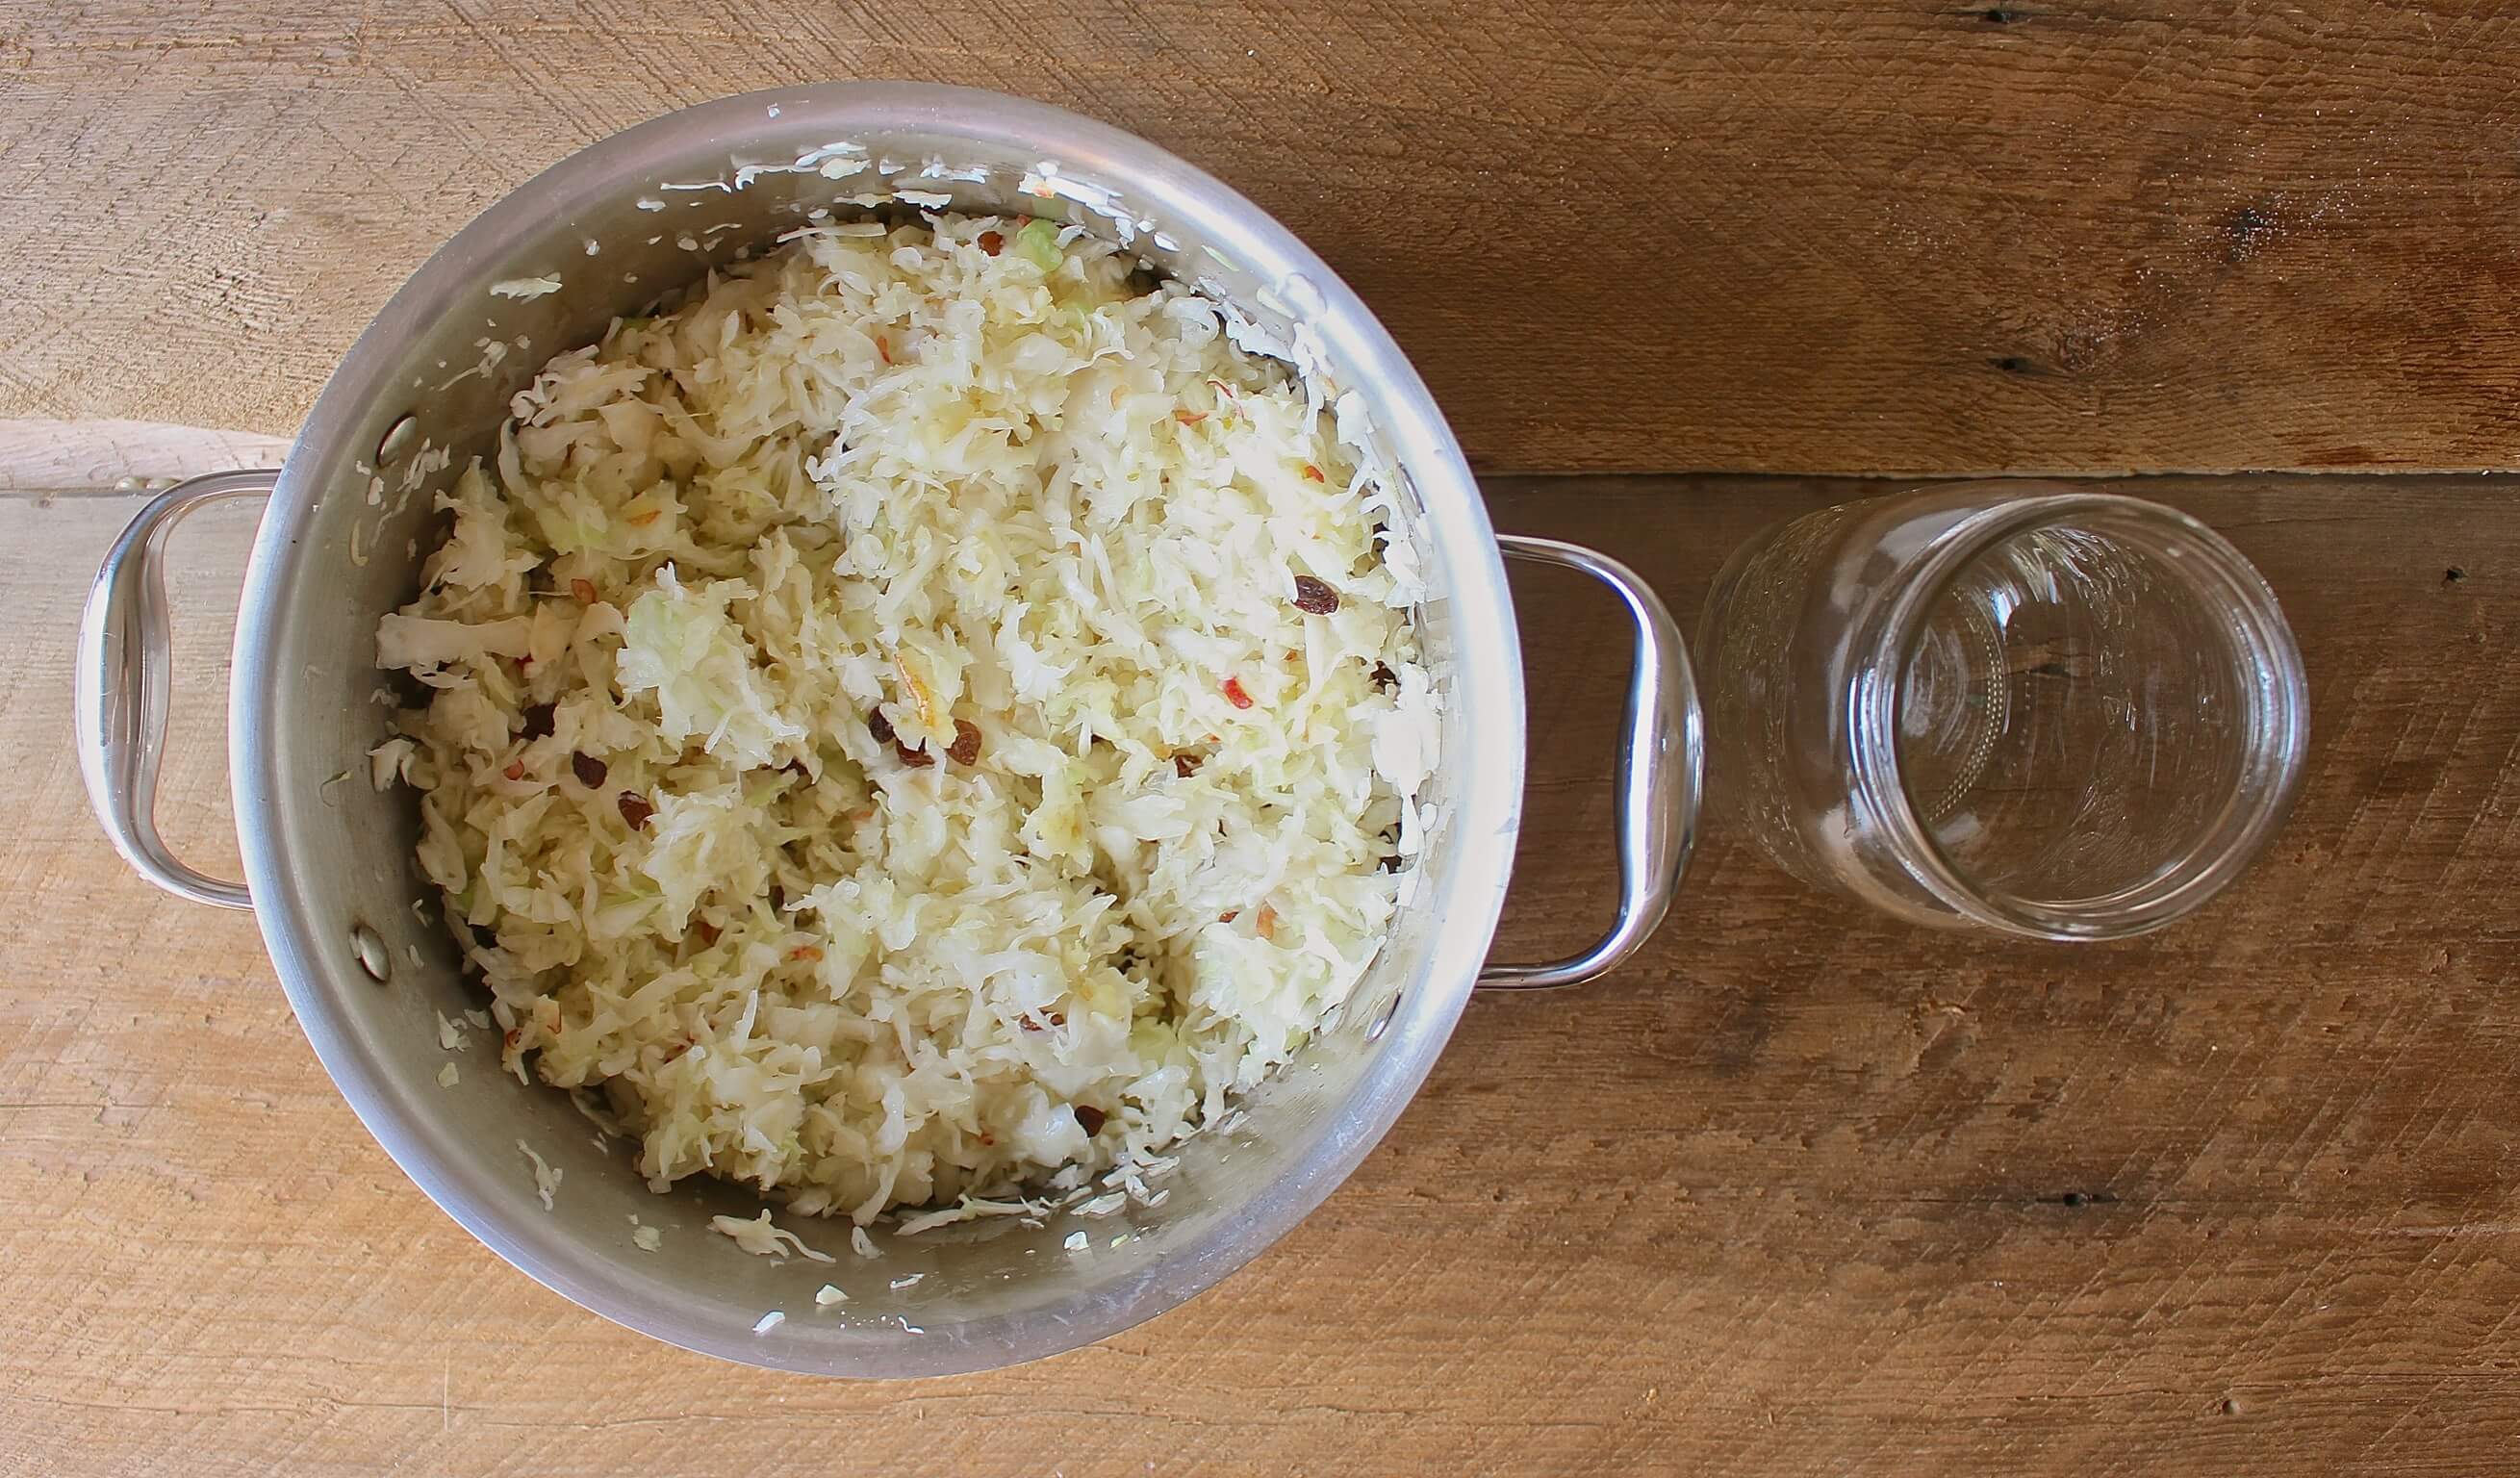 probiotic sauerkraut recipe